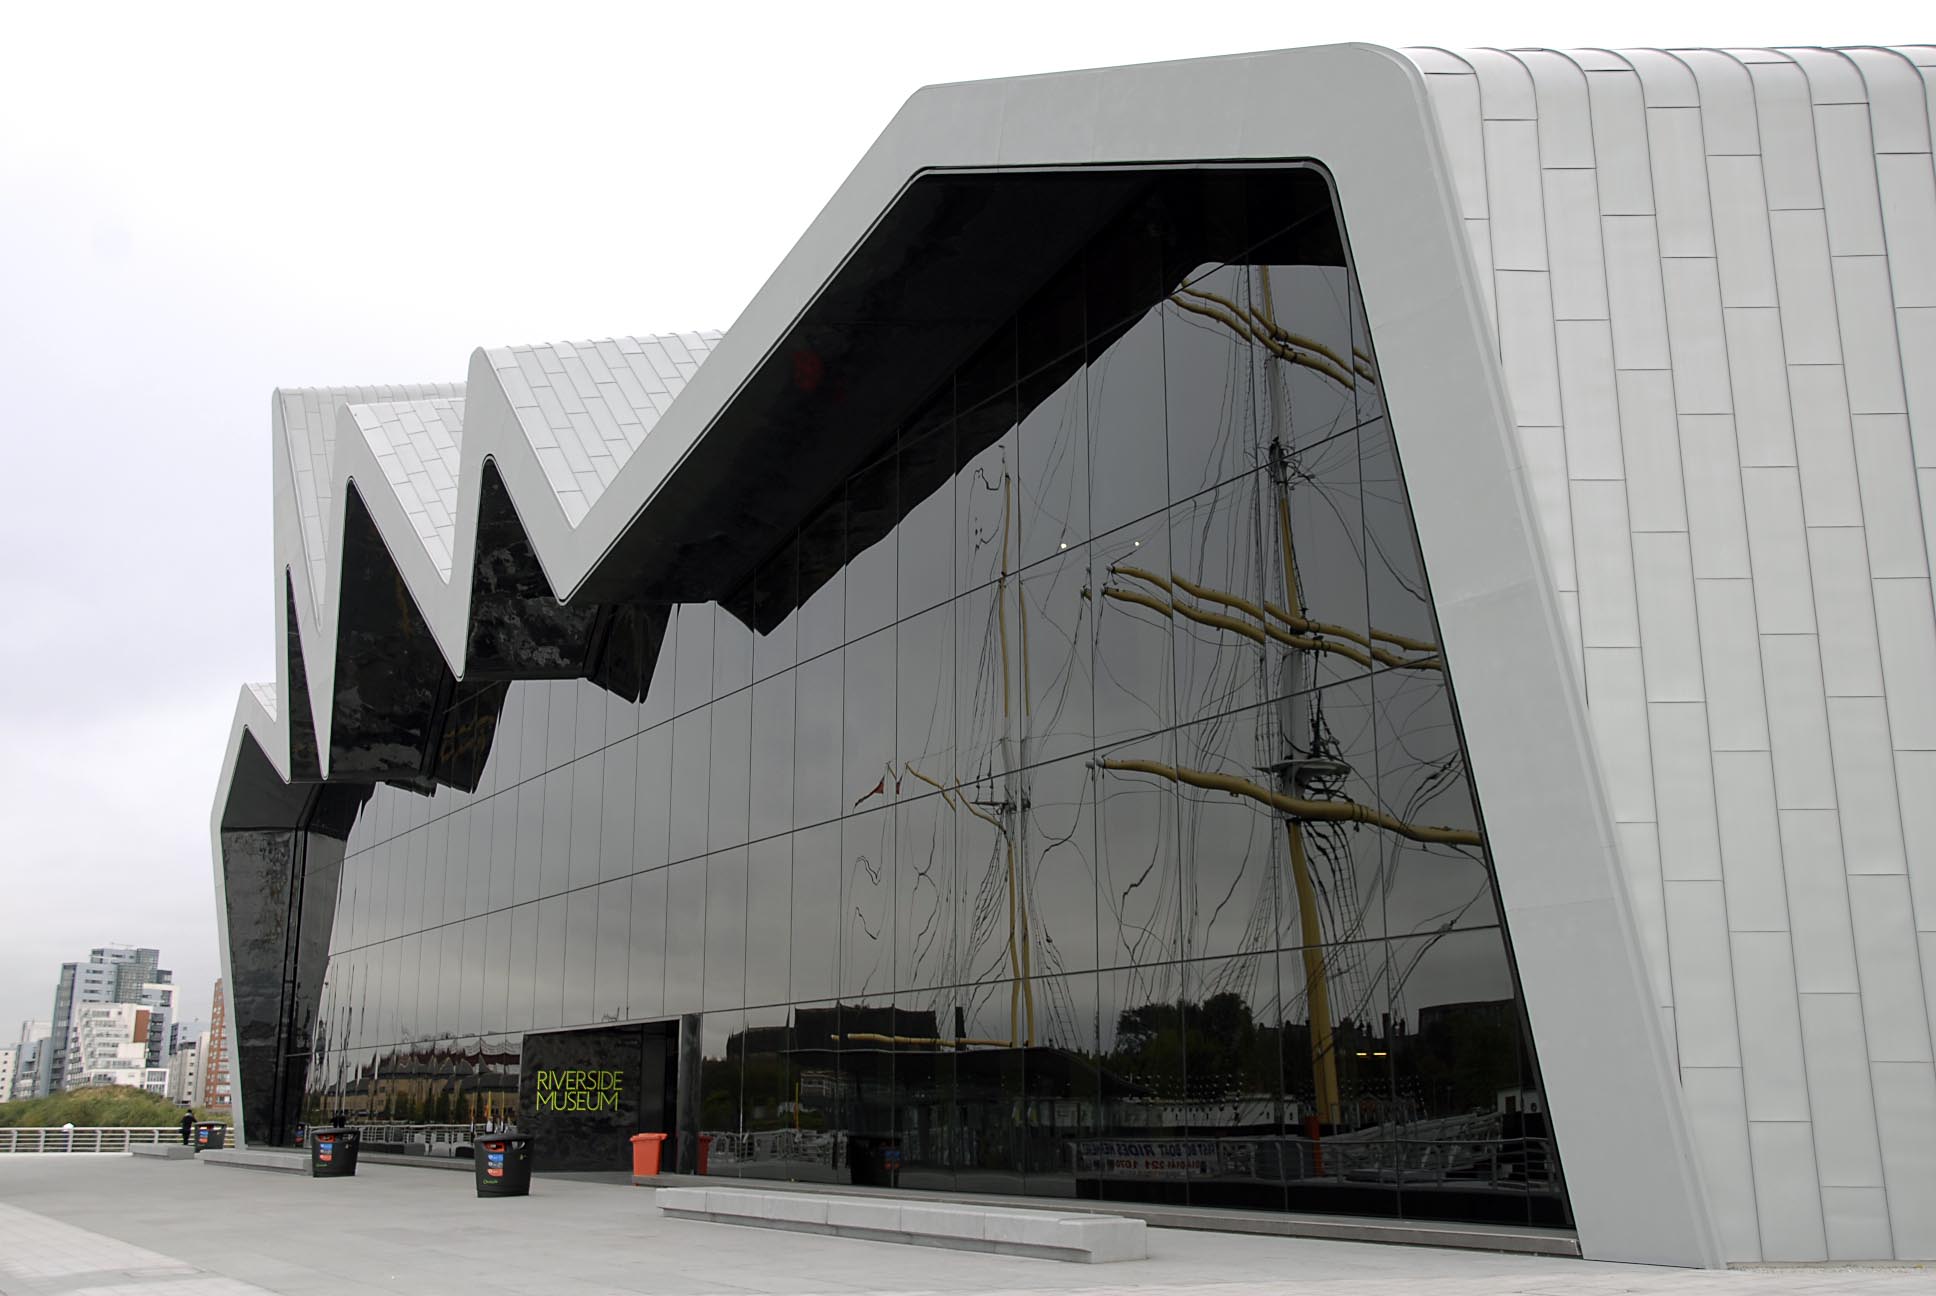 Музей Риверсайд в Глазго. Первый крупный инновационный архитектурный проект Захи Хадид в Великобритании.